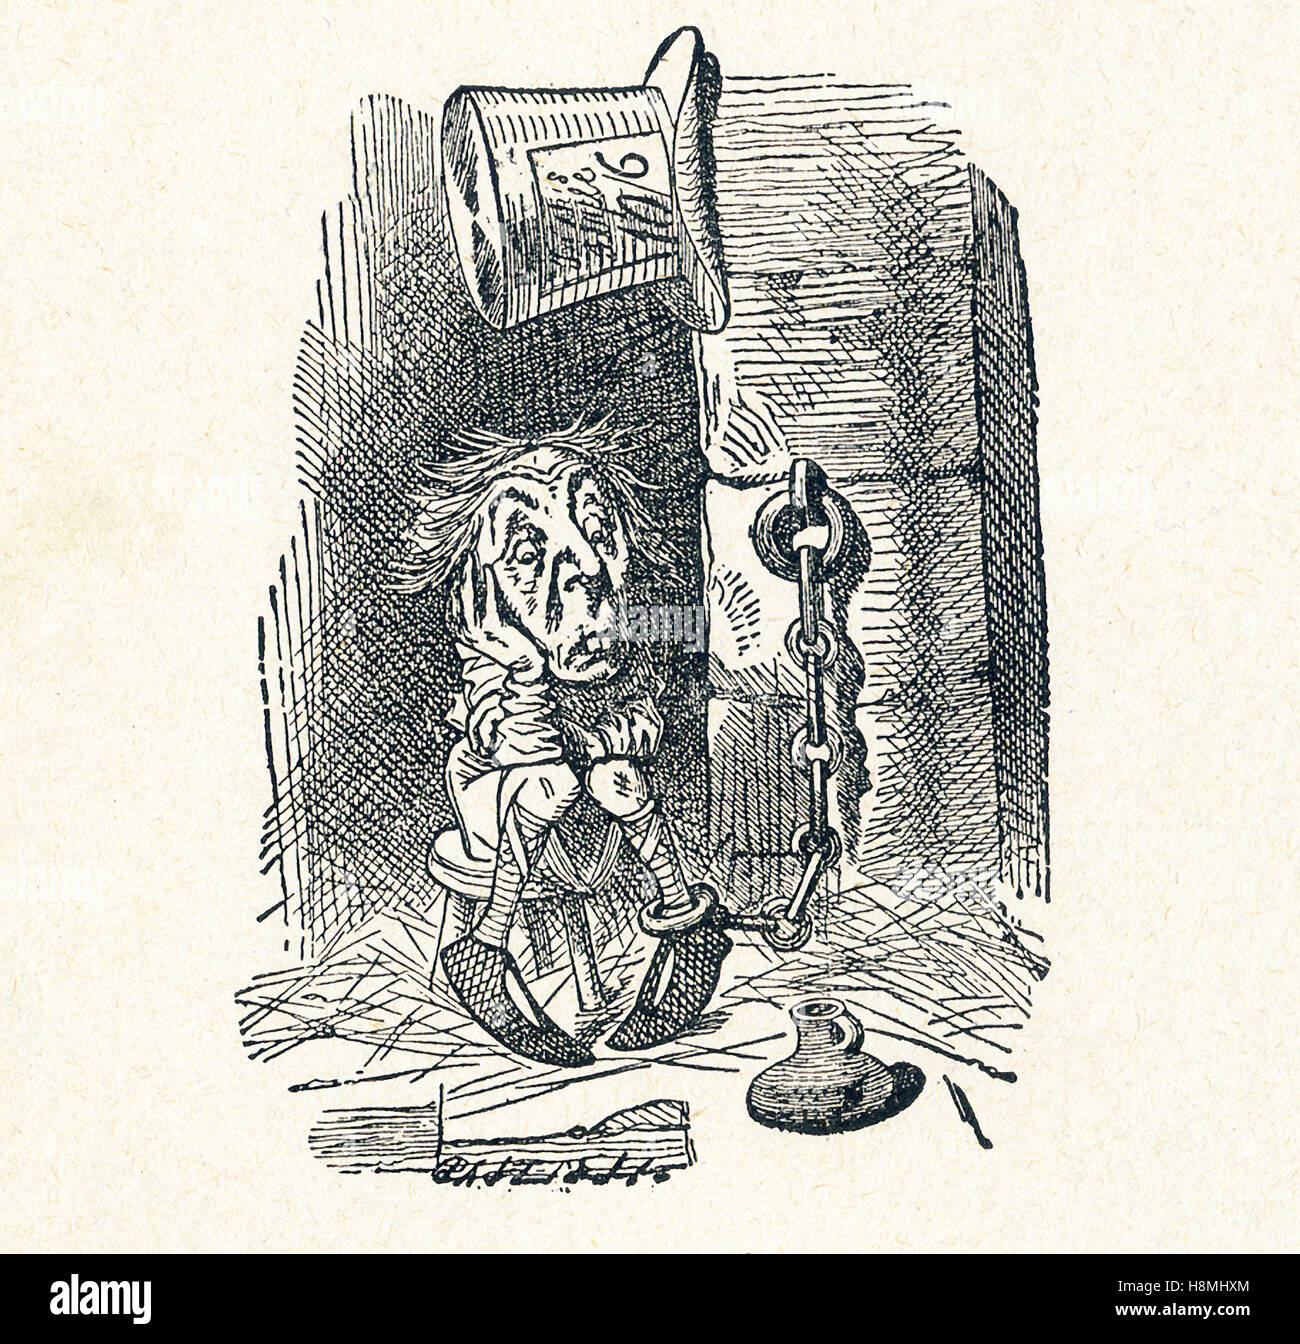 Esta es una escena de lo que Alice vio una vez viajó a través del espejo y el espejo en la habitación de Lewis Carroll 'a Través del Espejo'. Aquí puede ver el mensajero del rey blanco en la cárcel en espera de juicio. Lewis Carroll (Charles Lutwidge Dodgson) escribió la novela "a través de la del espejo y lo que Alicia encontró allí' en 1871 como una secuela de "Alice's Adventures in Wonderland". Foto de stock